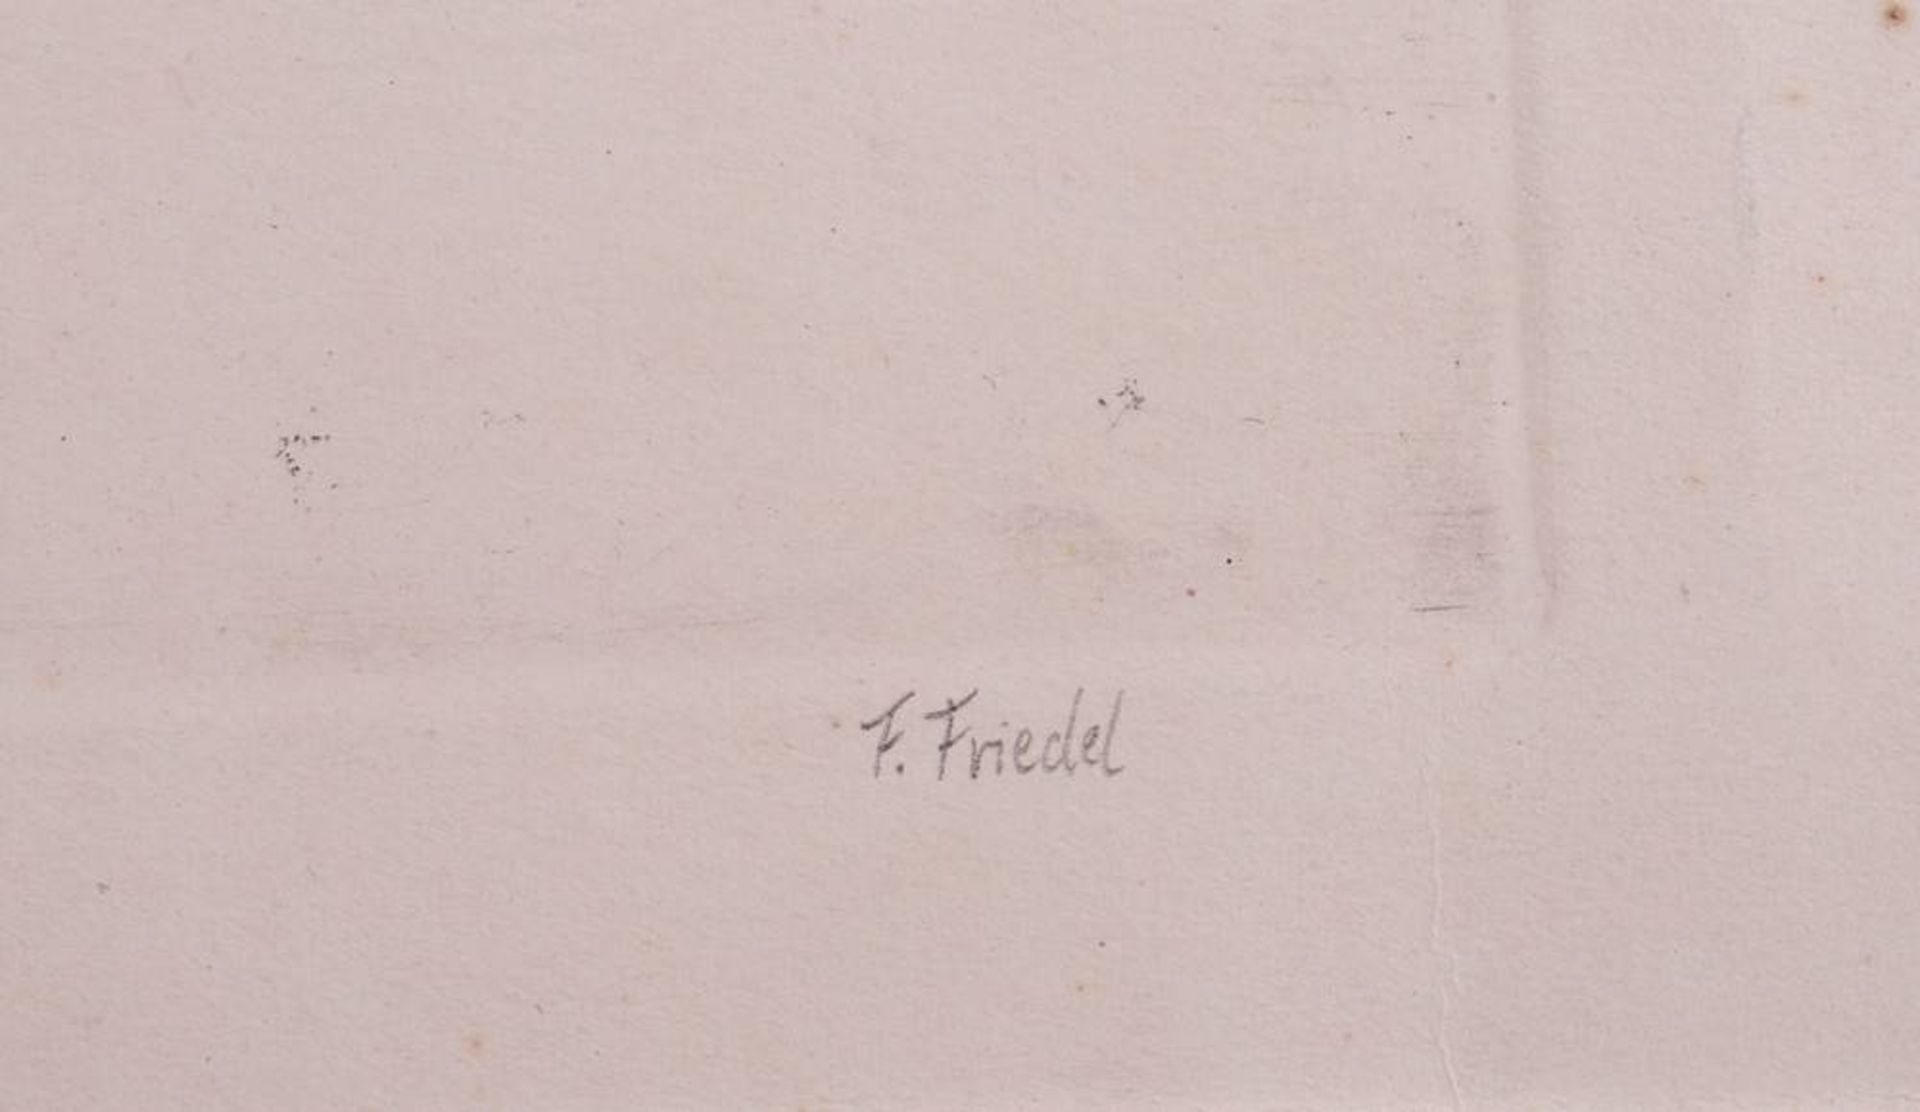 F. Friedel - Bild 3 aus 3